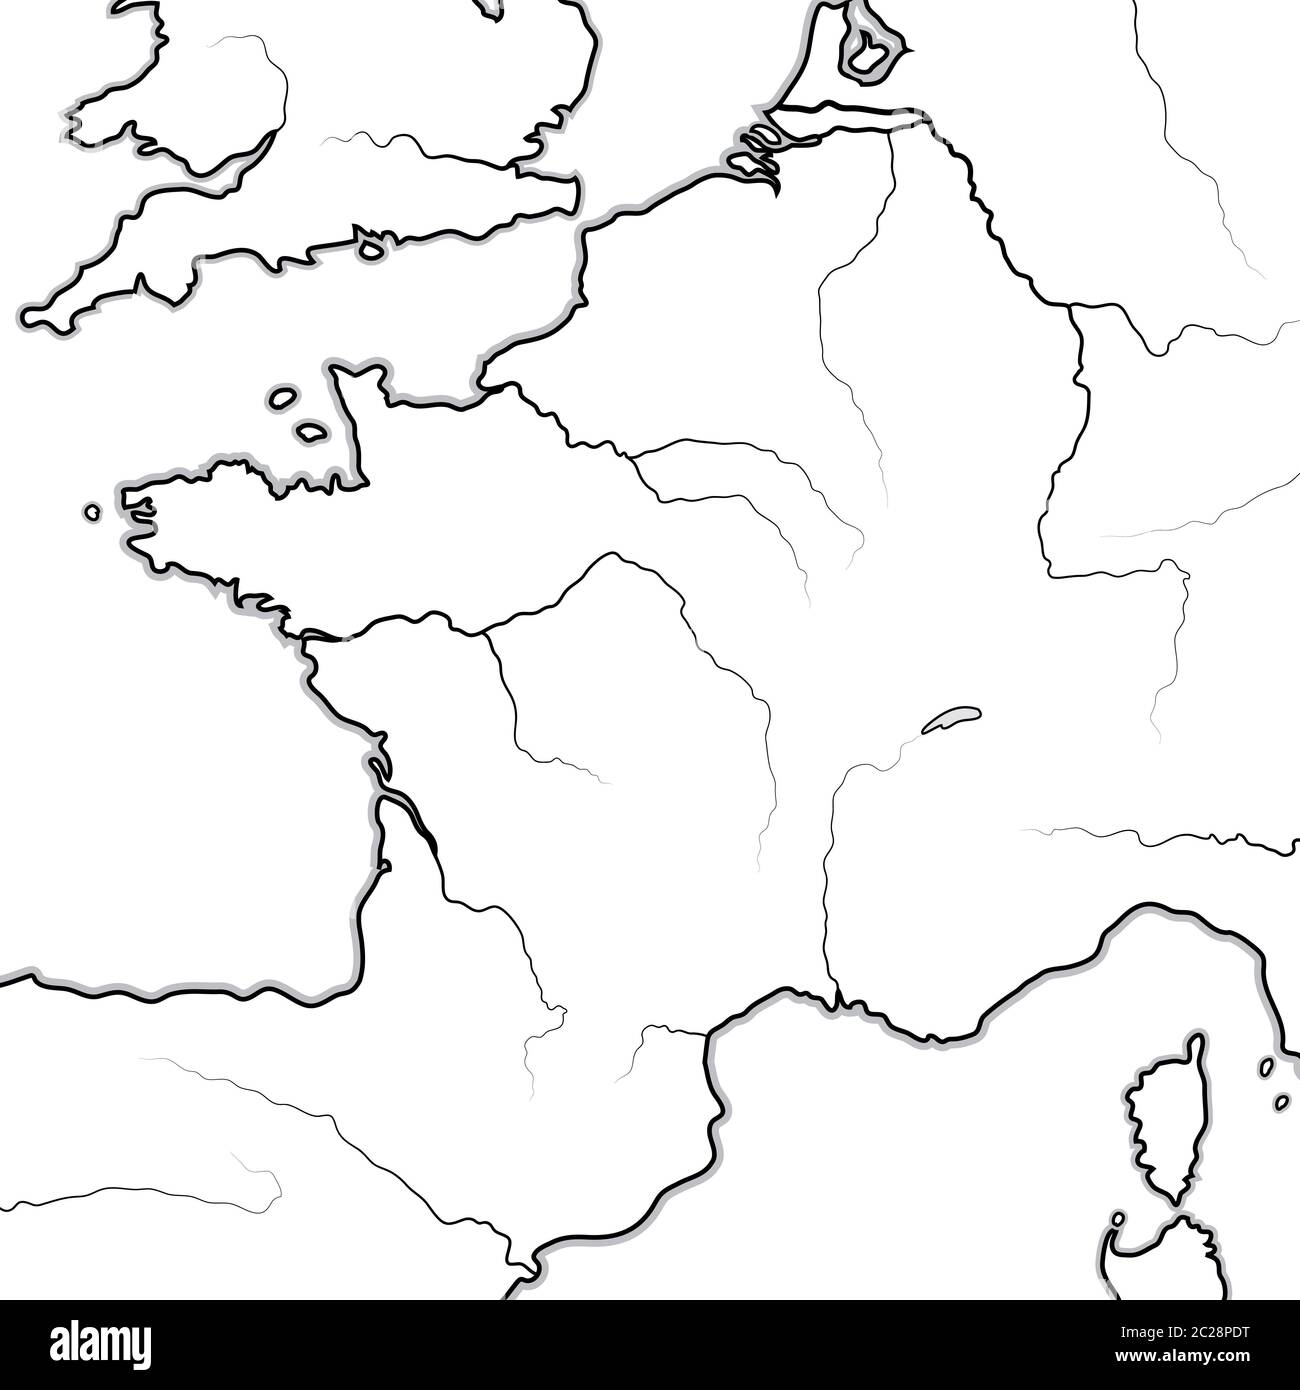 Karte der FRANZÖSISCHEN Länder: Frankreich, Provence, Normandie, Okzitanien, Aquitanien. Geografische Karte. Stockfoto